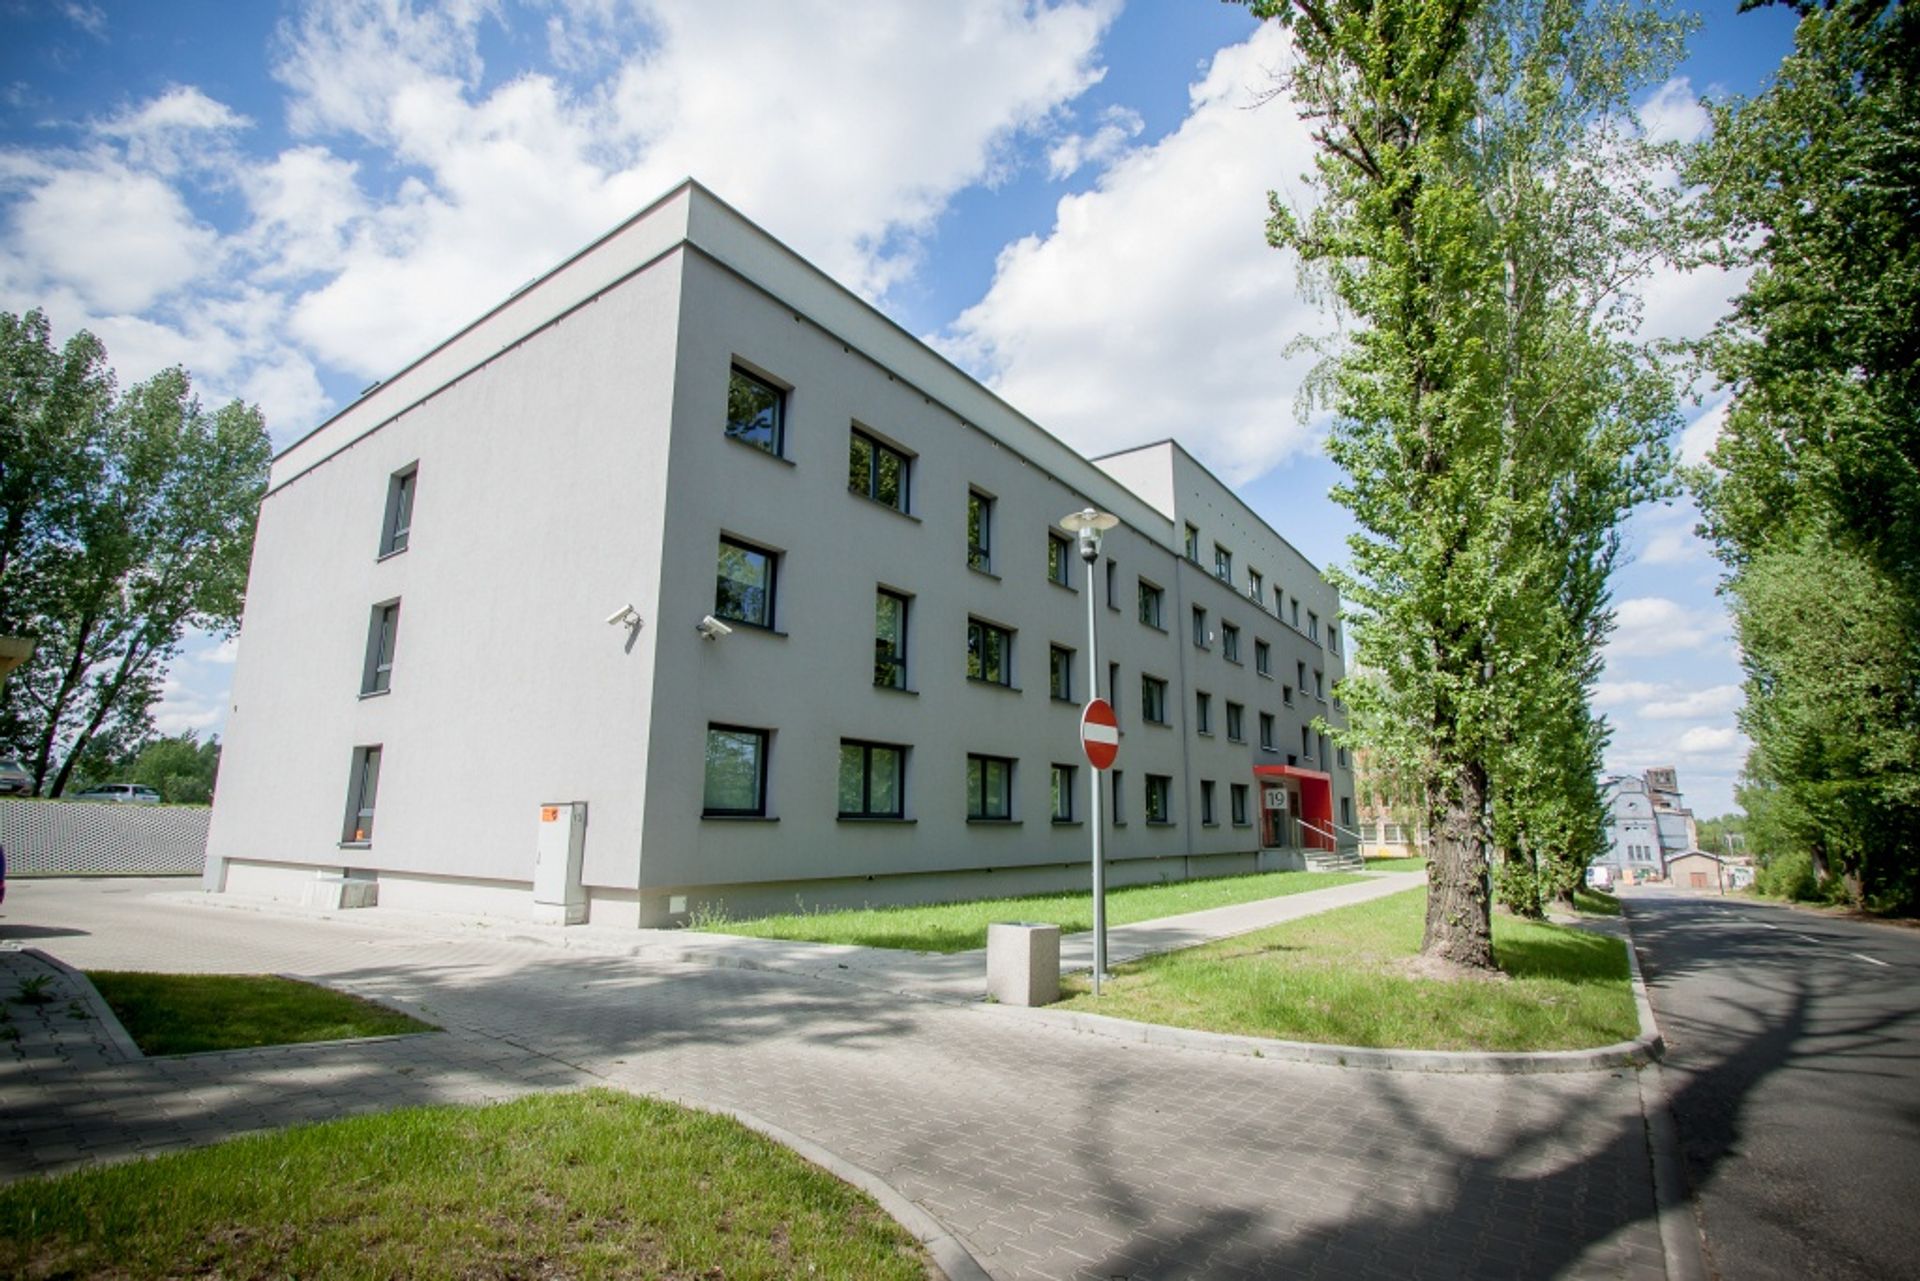  Bergerat Monnoyeur nowym najemcą w kompleksie biurowym Porcelanowa 19 w Katowicach